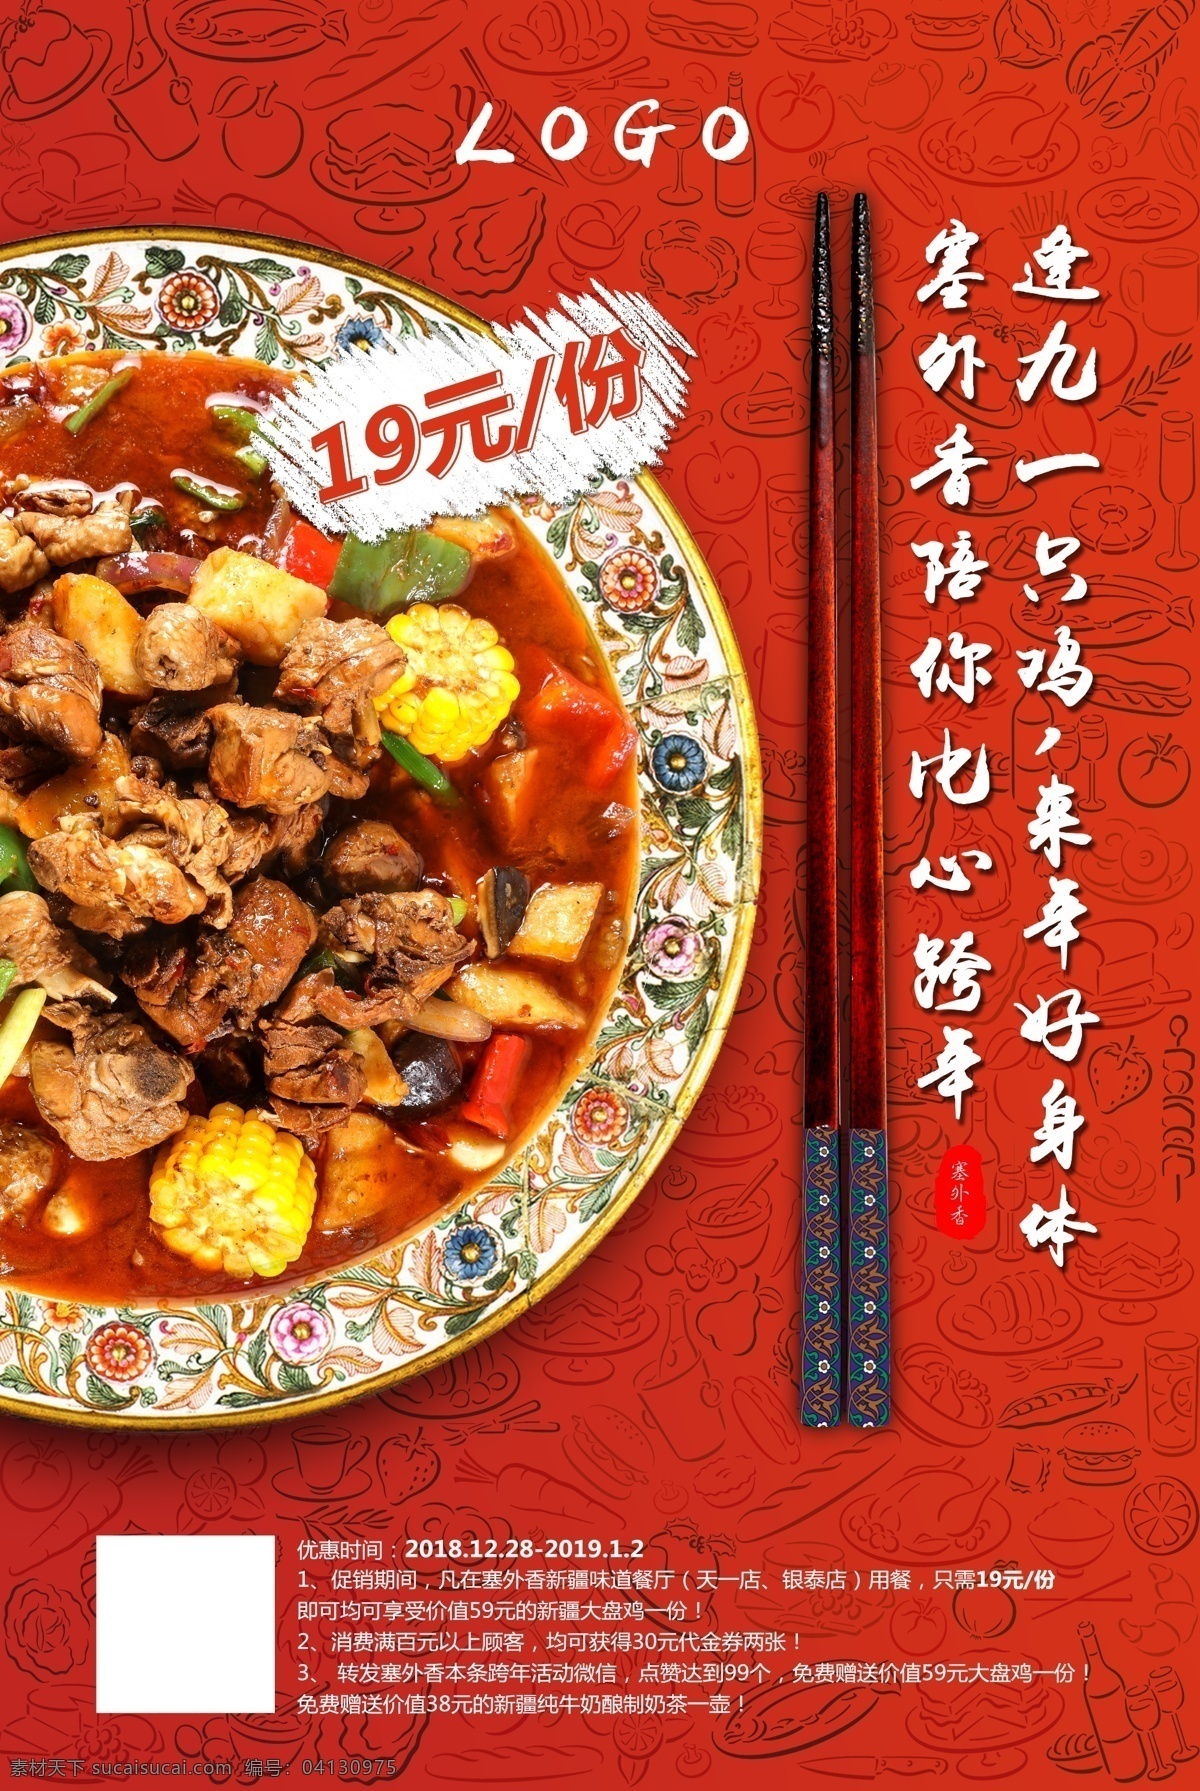 新疆大盘鸡 大盘鸡 菜品 清真 创意 红色 筷子 盘子 菜单